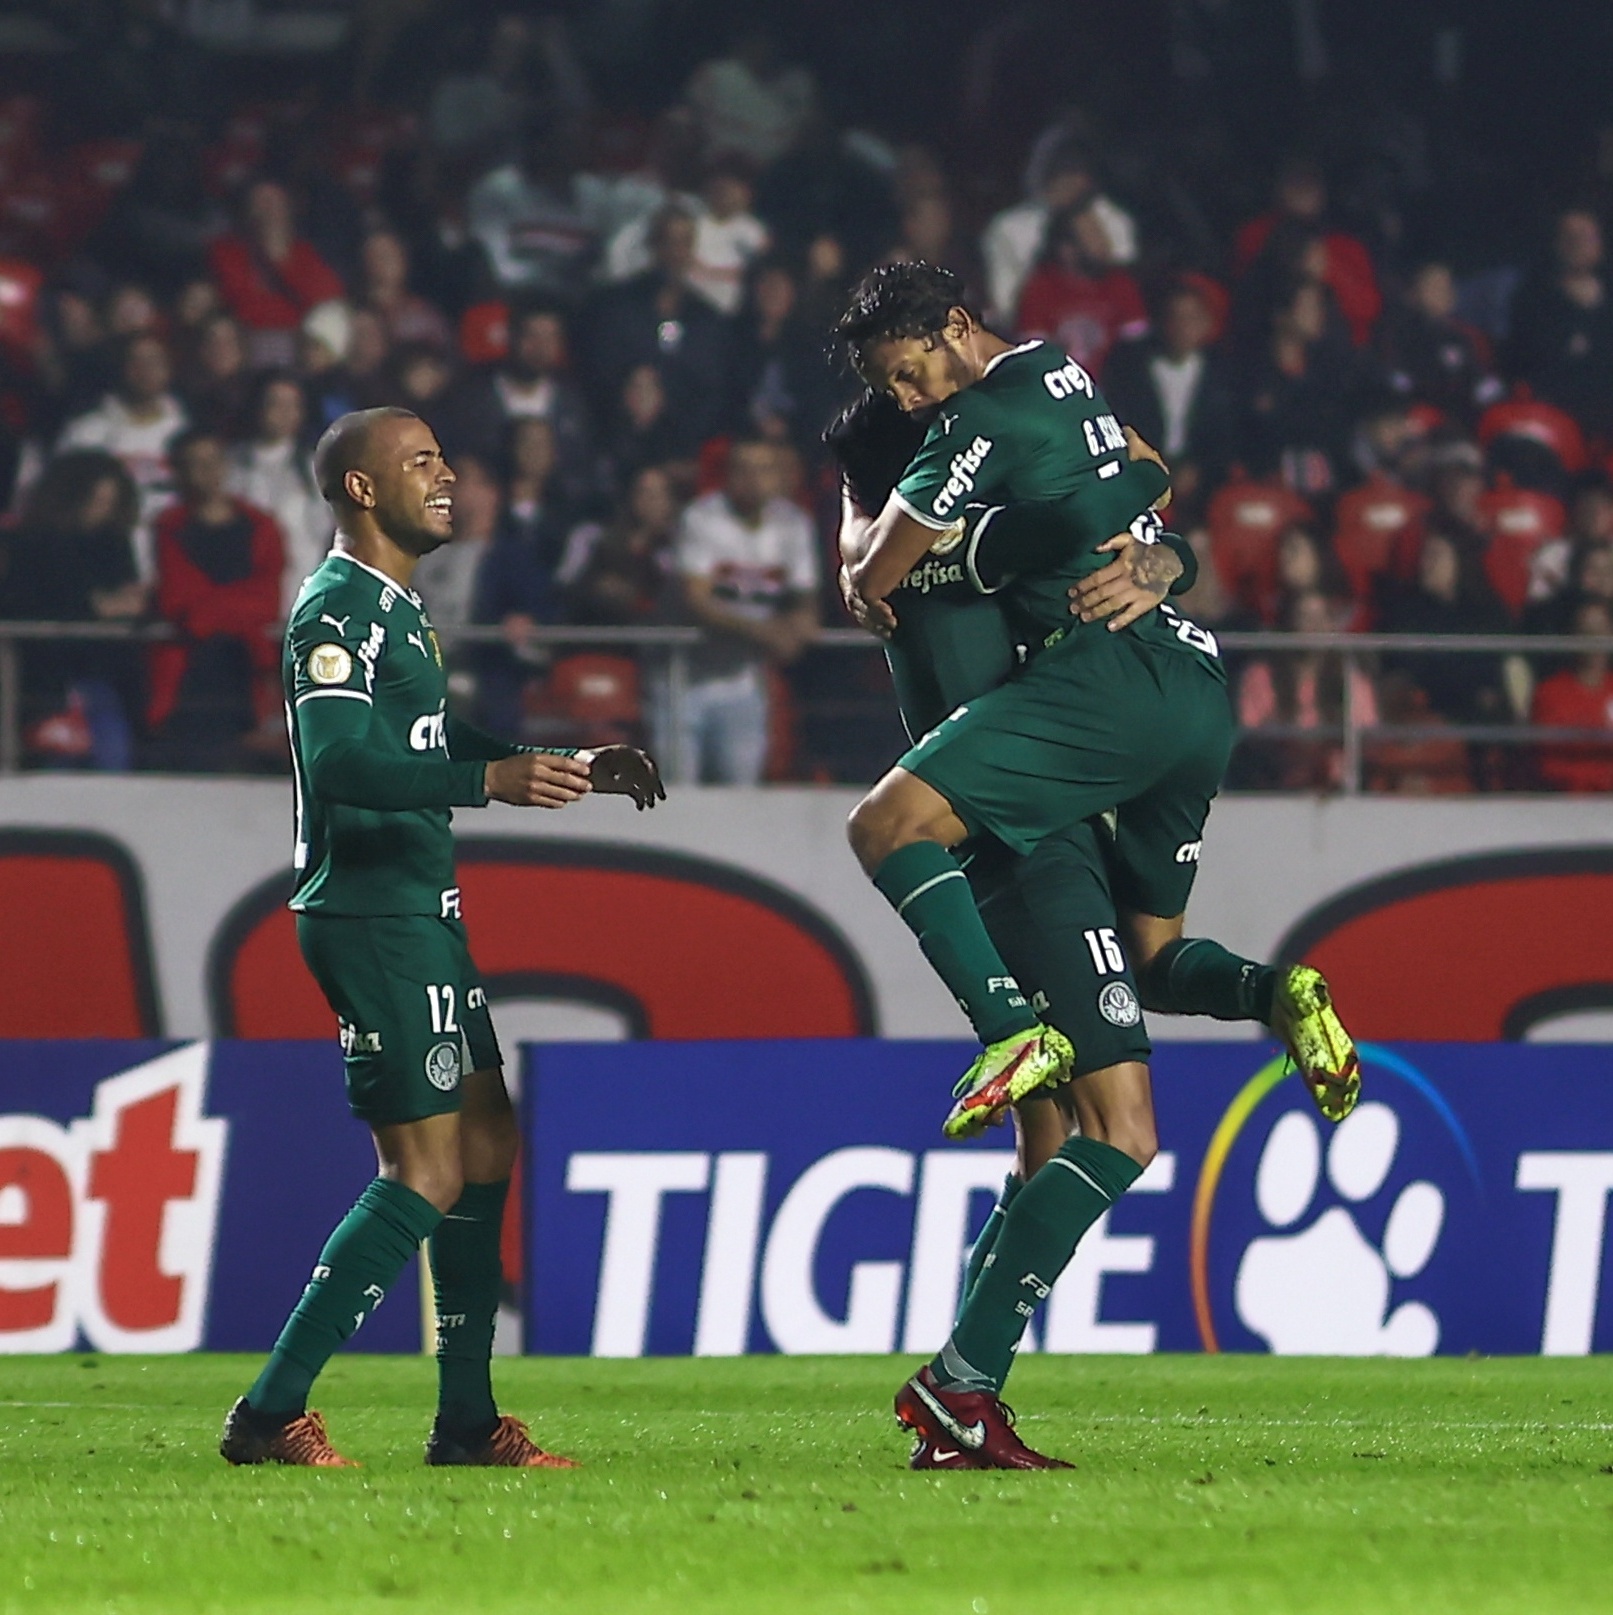 Palmeiras cai na Copa São Paulo e internet não perdoa: “não tem